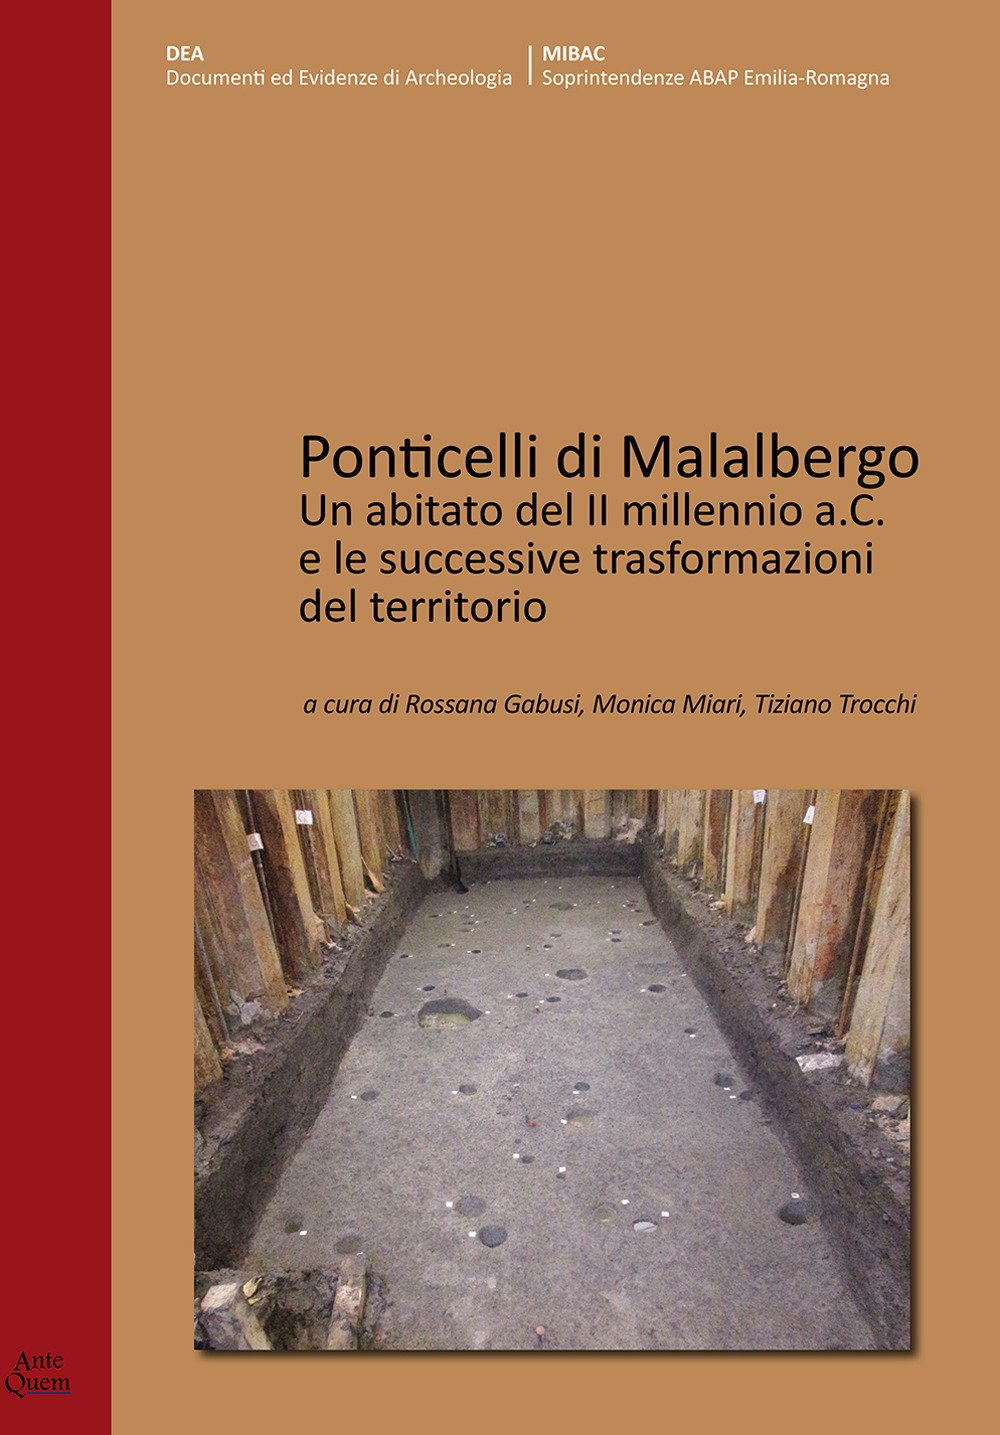 Ponticelli di Malalbergo. Un abitato del II millennio a.C. e le successive trasformazioni del territorio